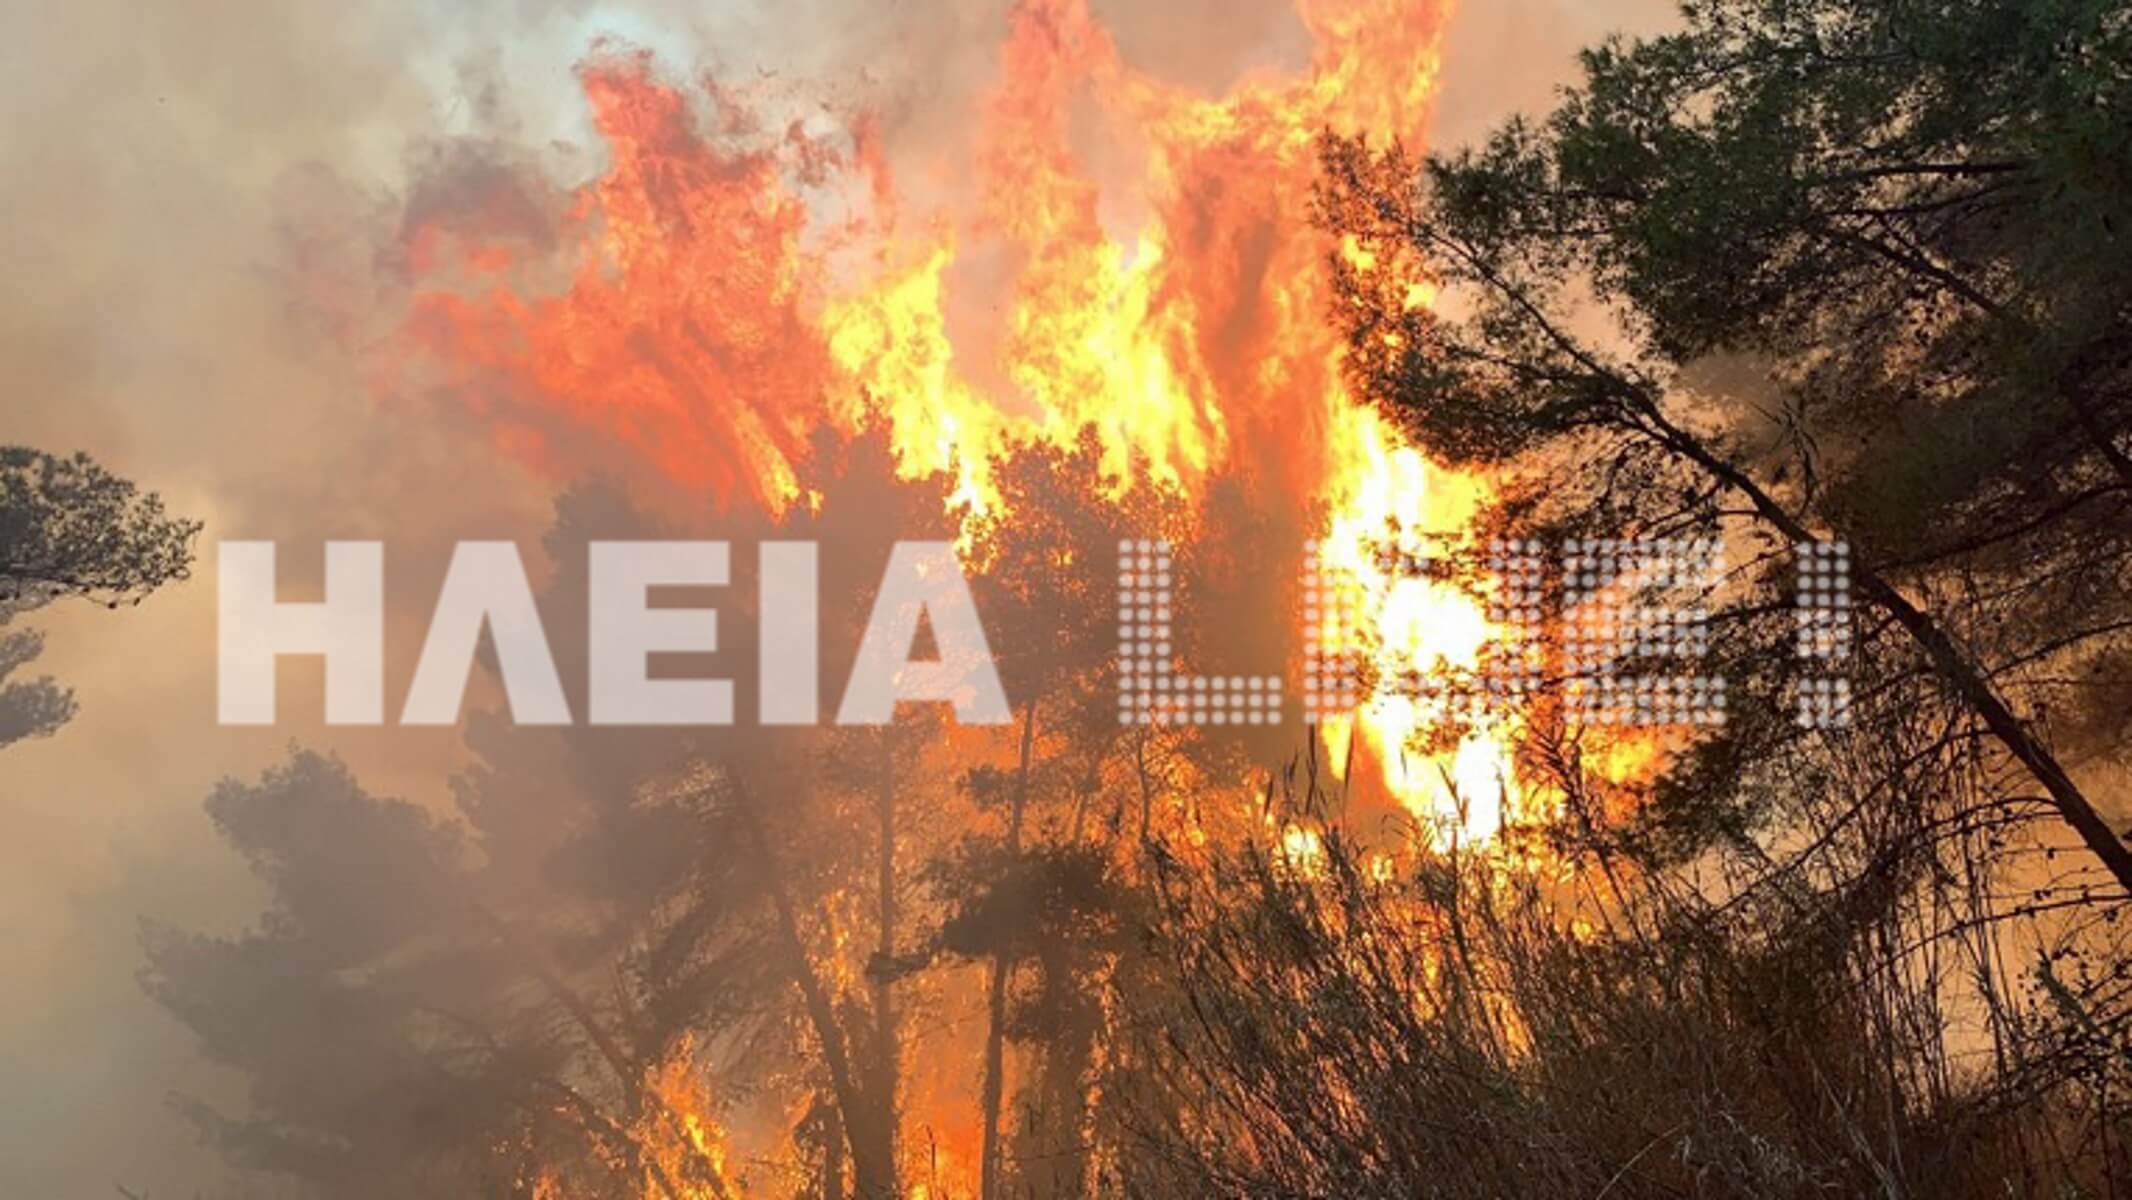 Καίγεται το “διαμάντι” της Πελοποννήσου! Ανεξέλεγκτη η φωτιά στο προστατευόμενο δάσος της Στροφυλιάς